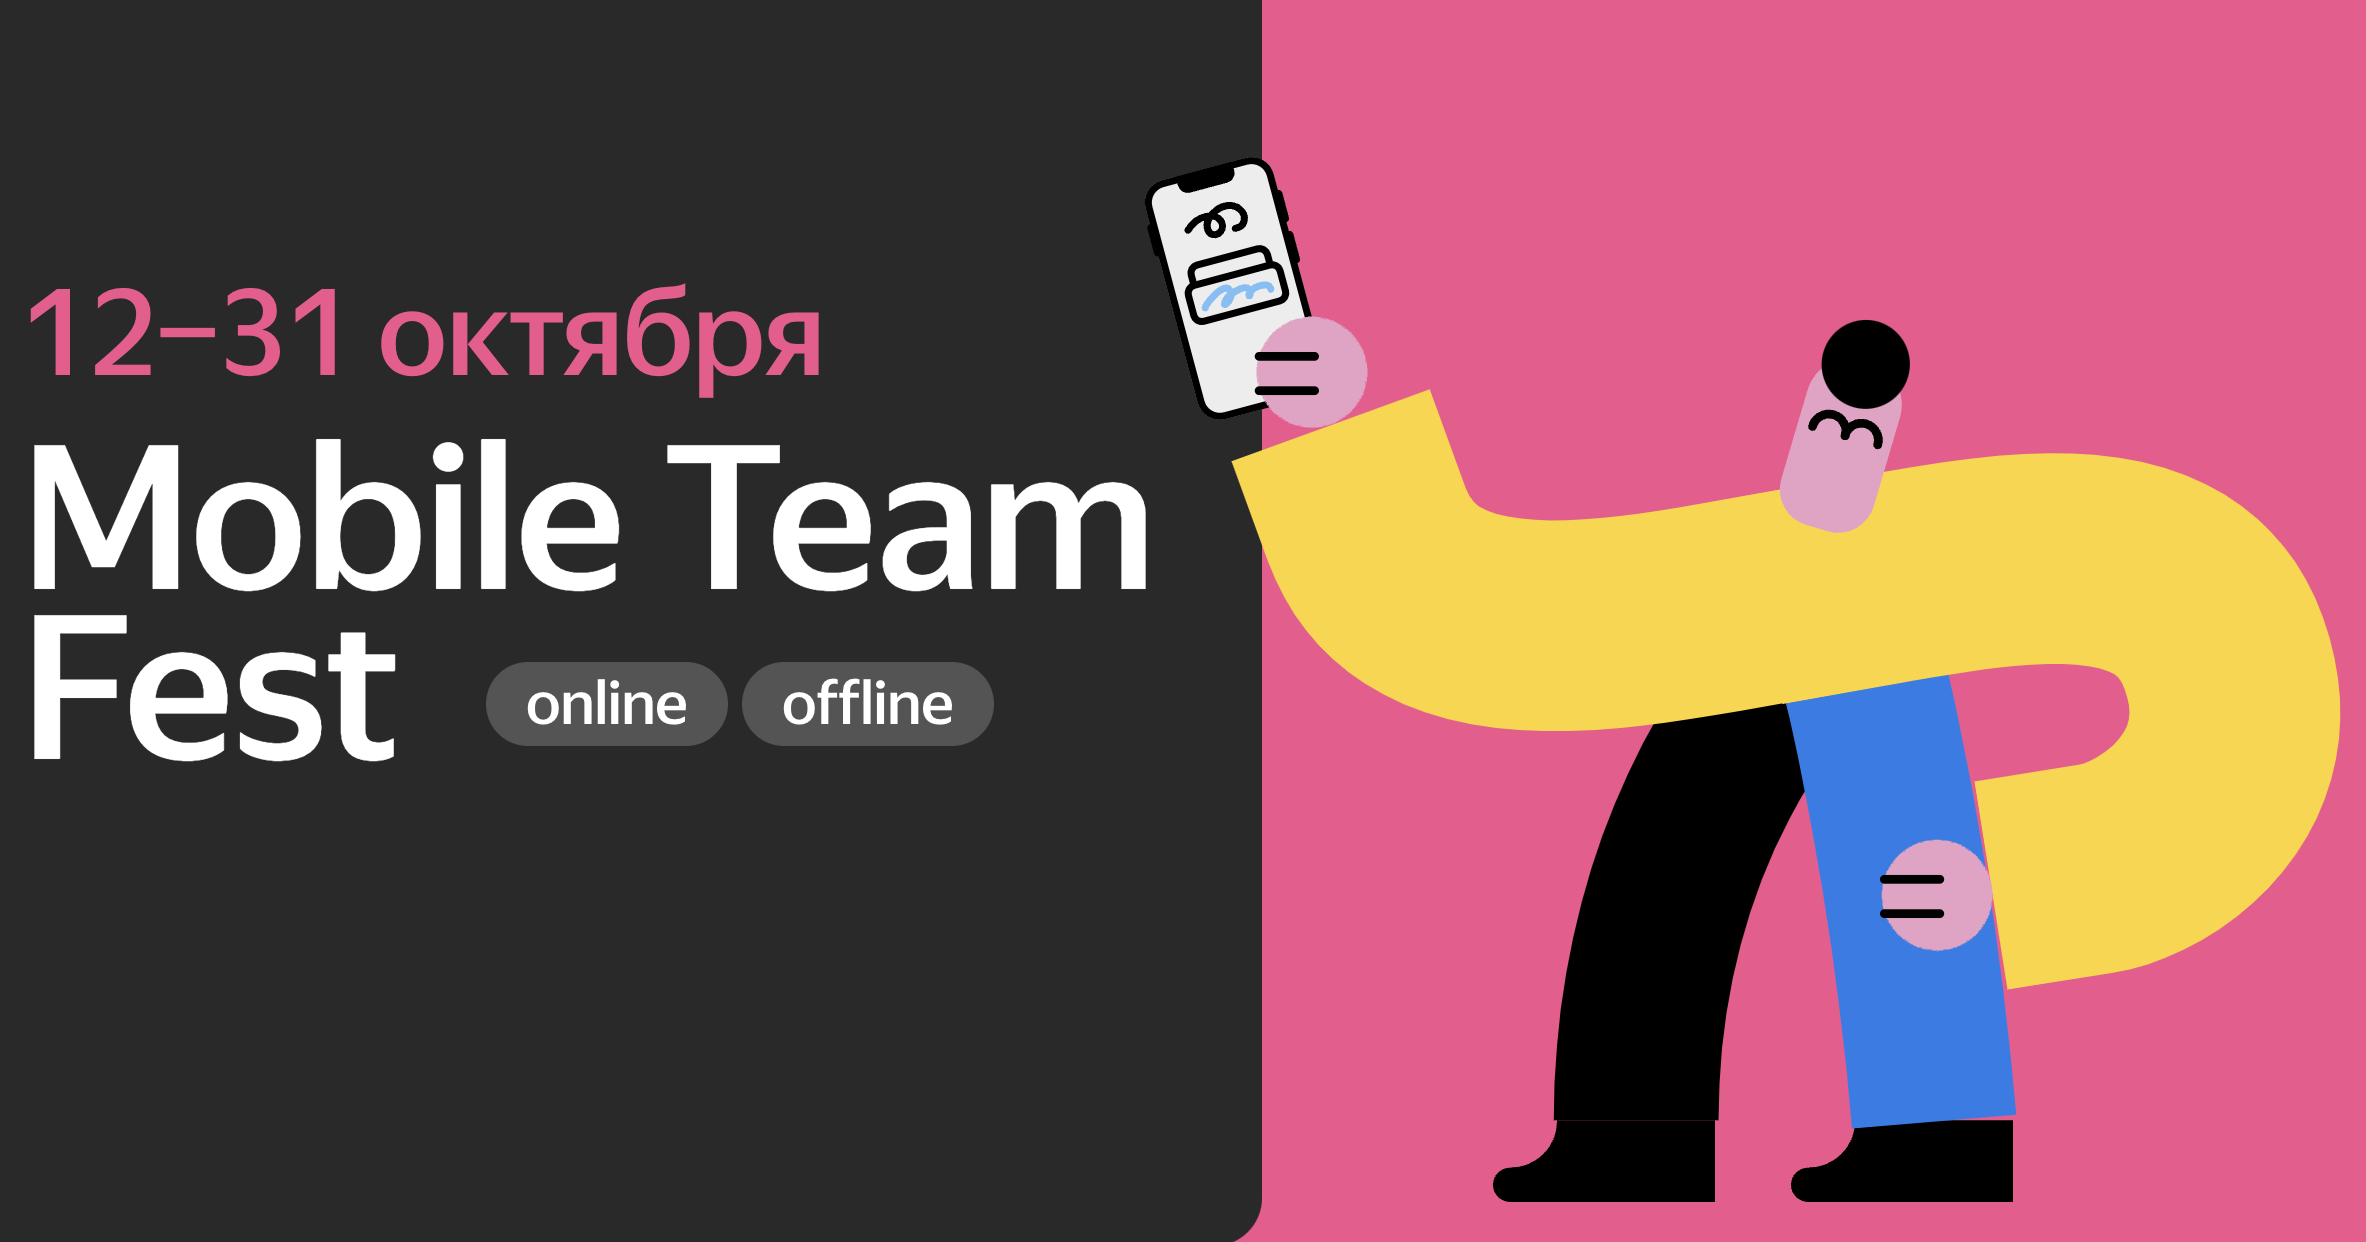 Обложка мероприятия Mobile Team Meetup от Yandex